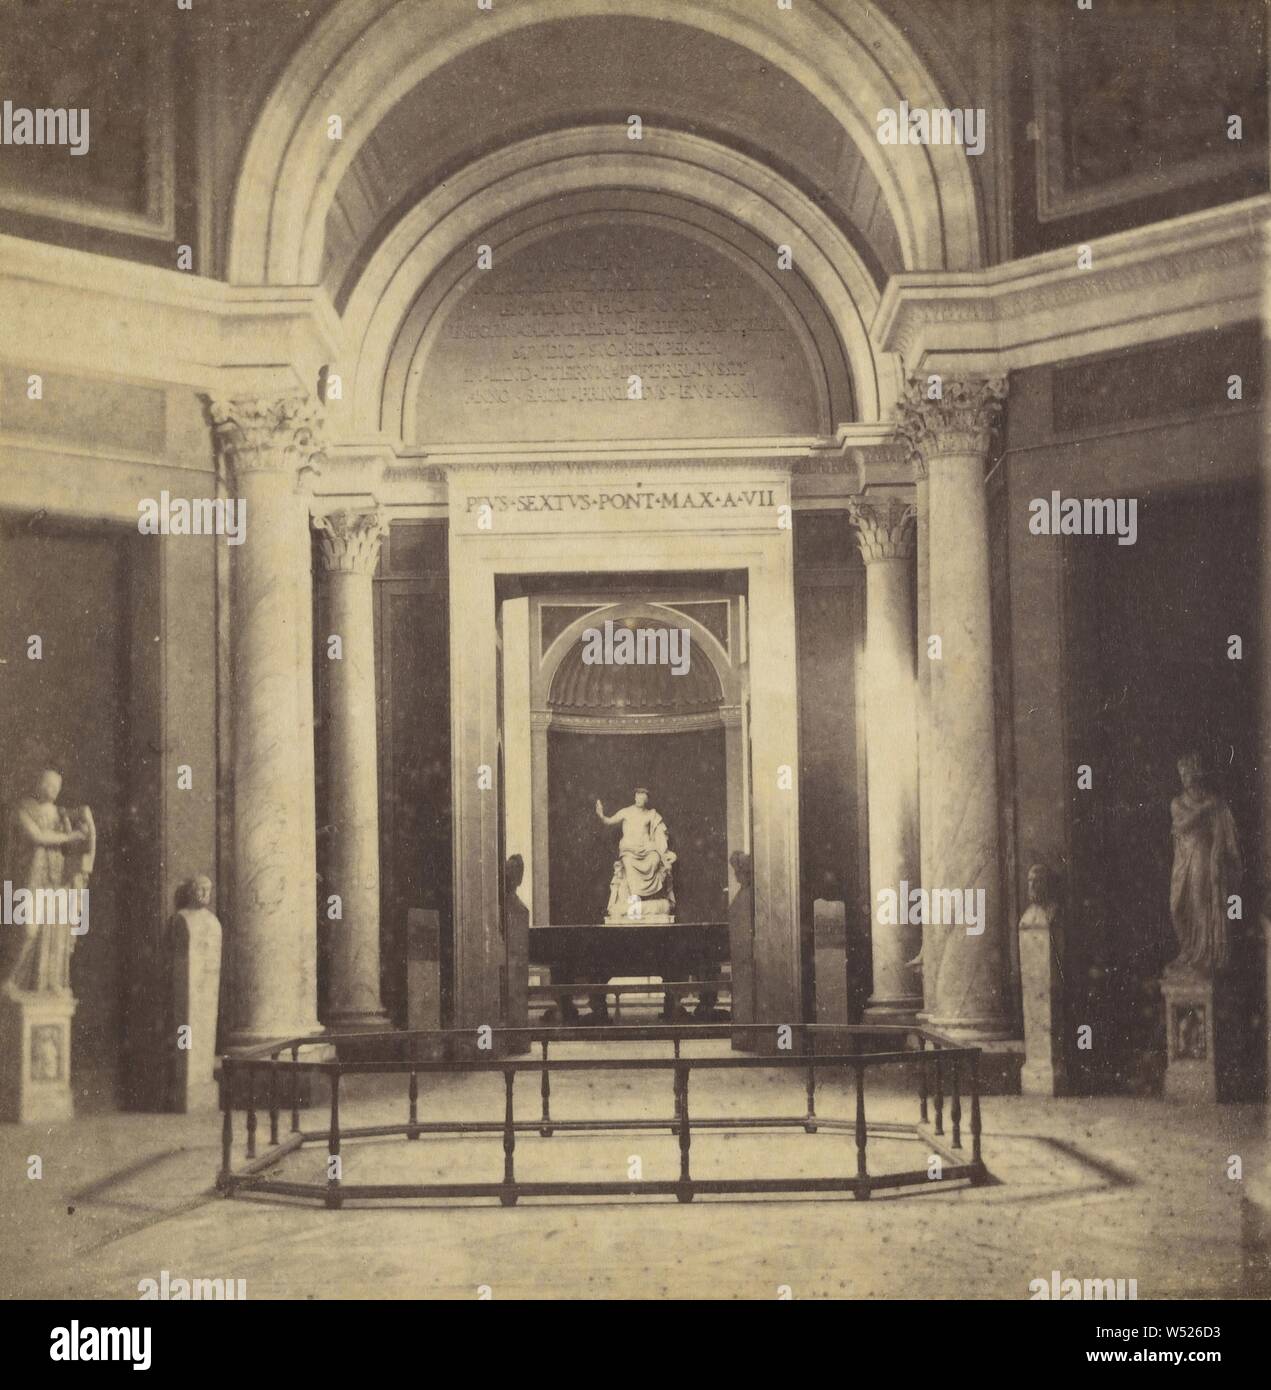 Interieur mit römischen Statuen und Büsten, F. Datri (Italienisch, aktive 1860s - 1870s), 1870s, Eiklar silber Drucken Stockfoto